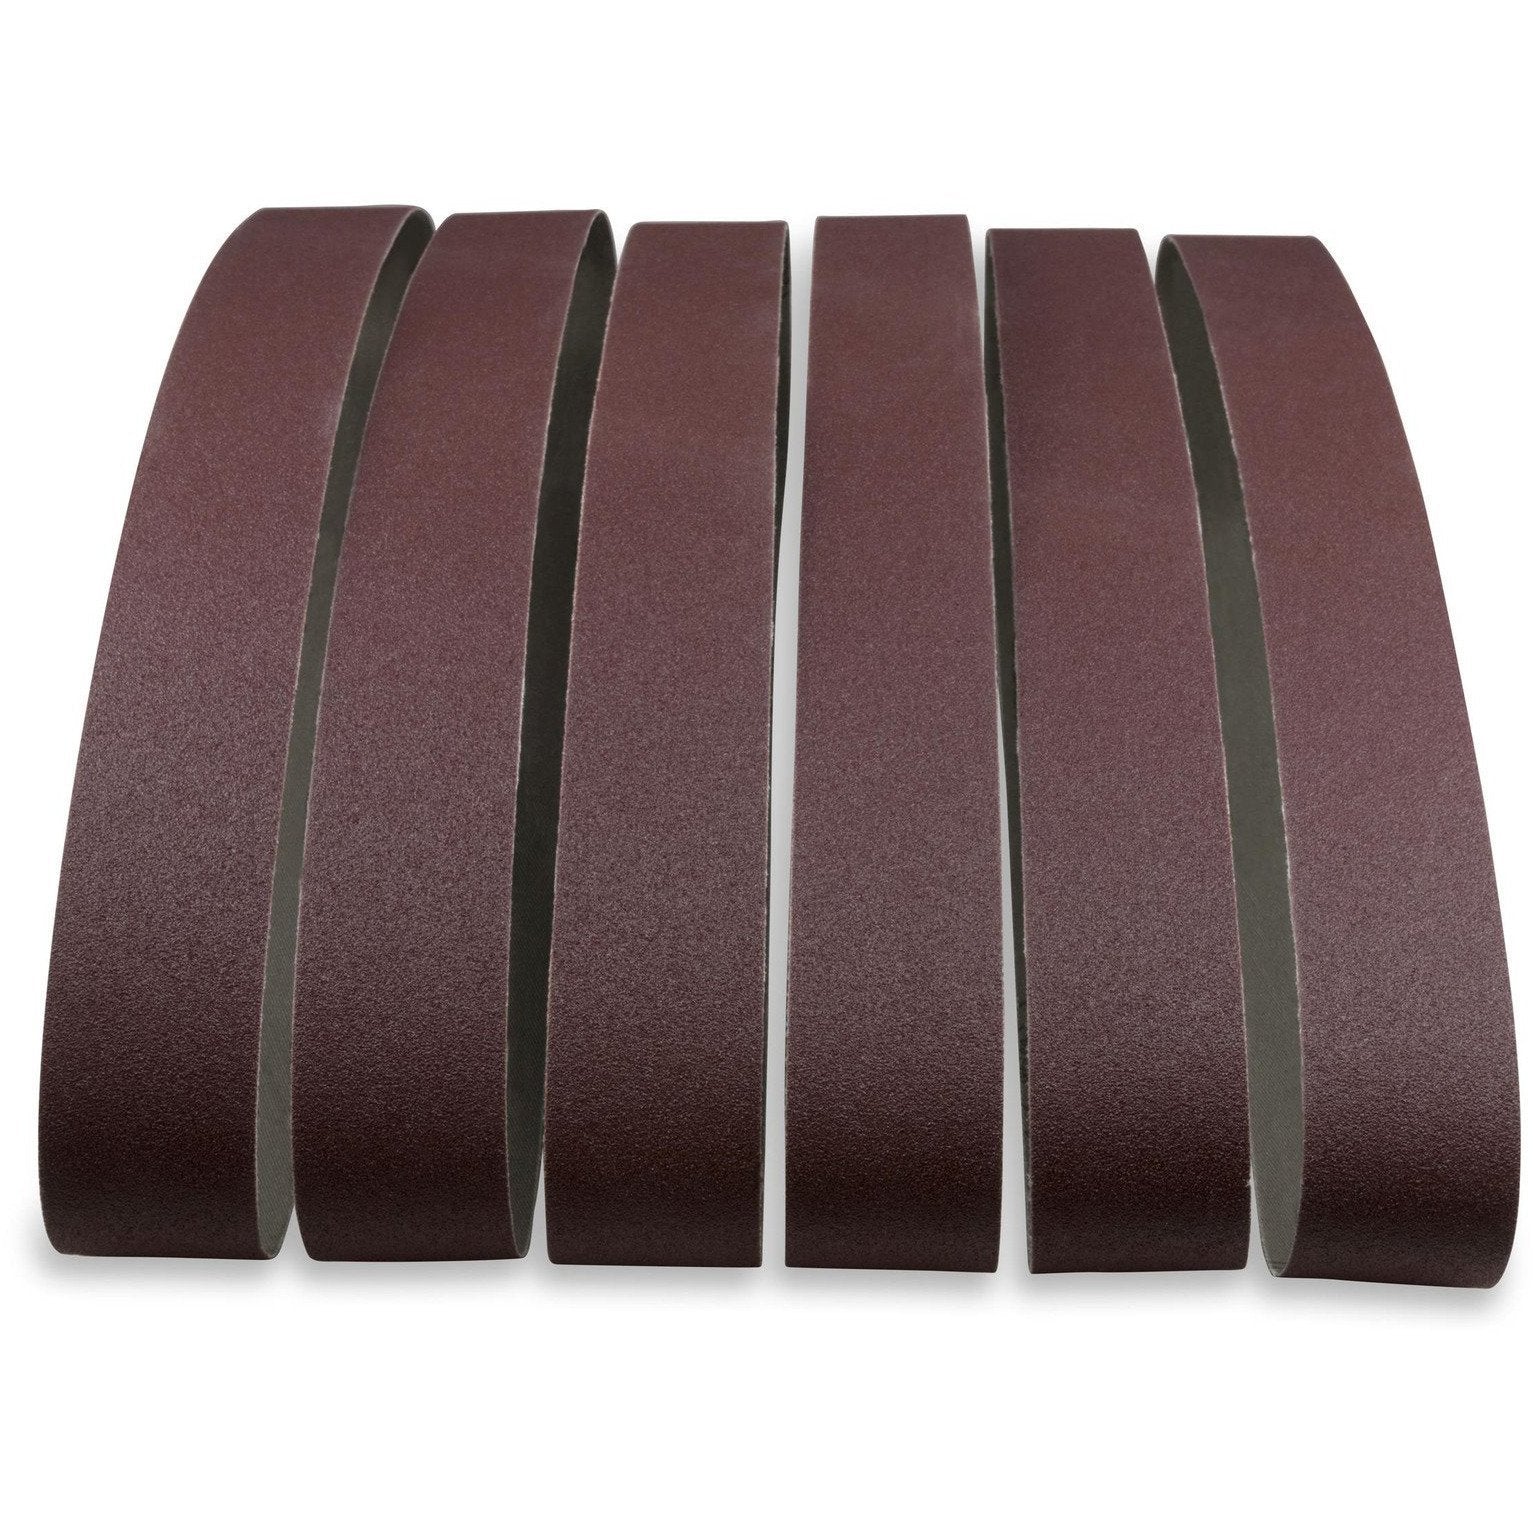 2 X 36 Inch Aluminum Oxide Metal Sanding Belts, 6 Pack - Red Label Abrasives